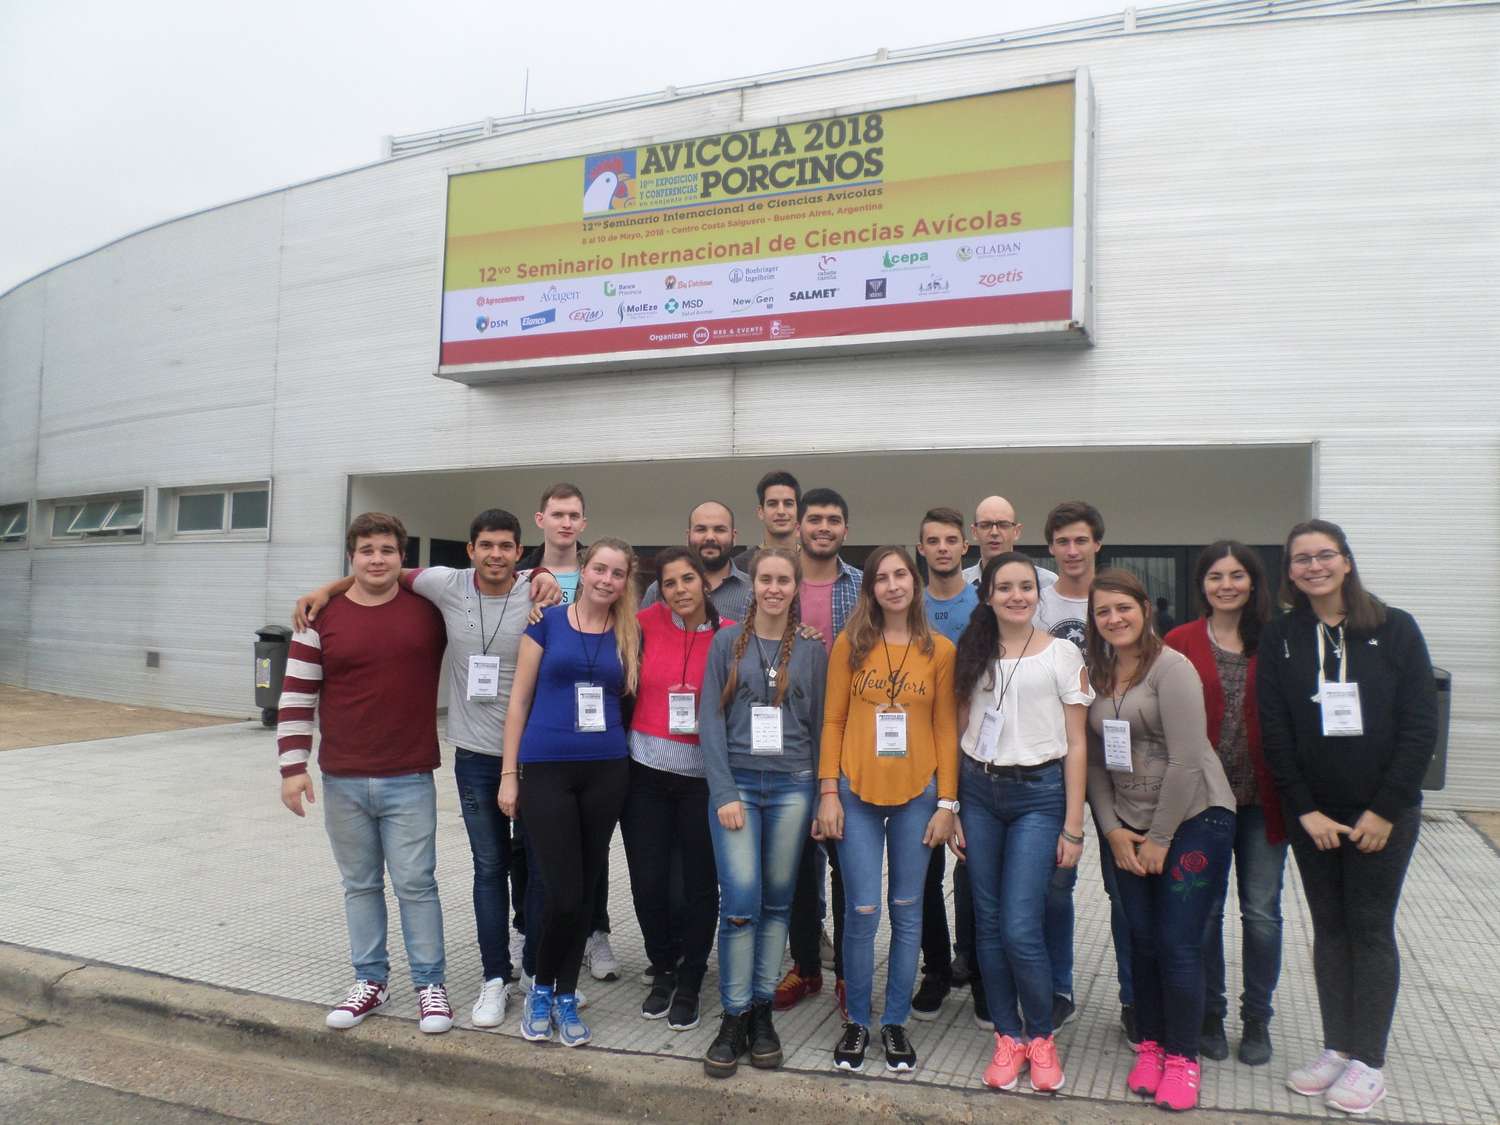 Alumnos del ITU estuvieron visitando la Expo Avícola y Porcinos 2018